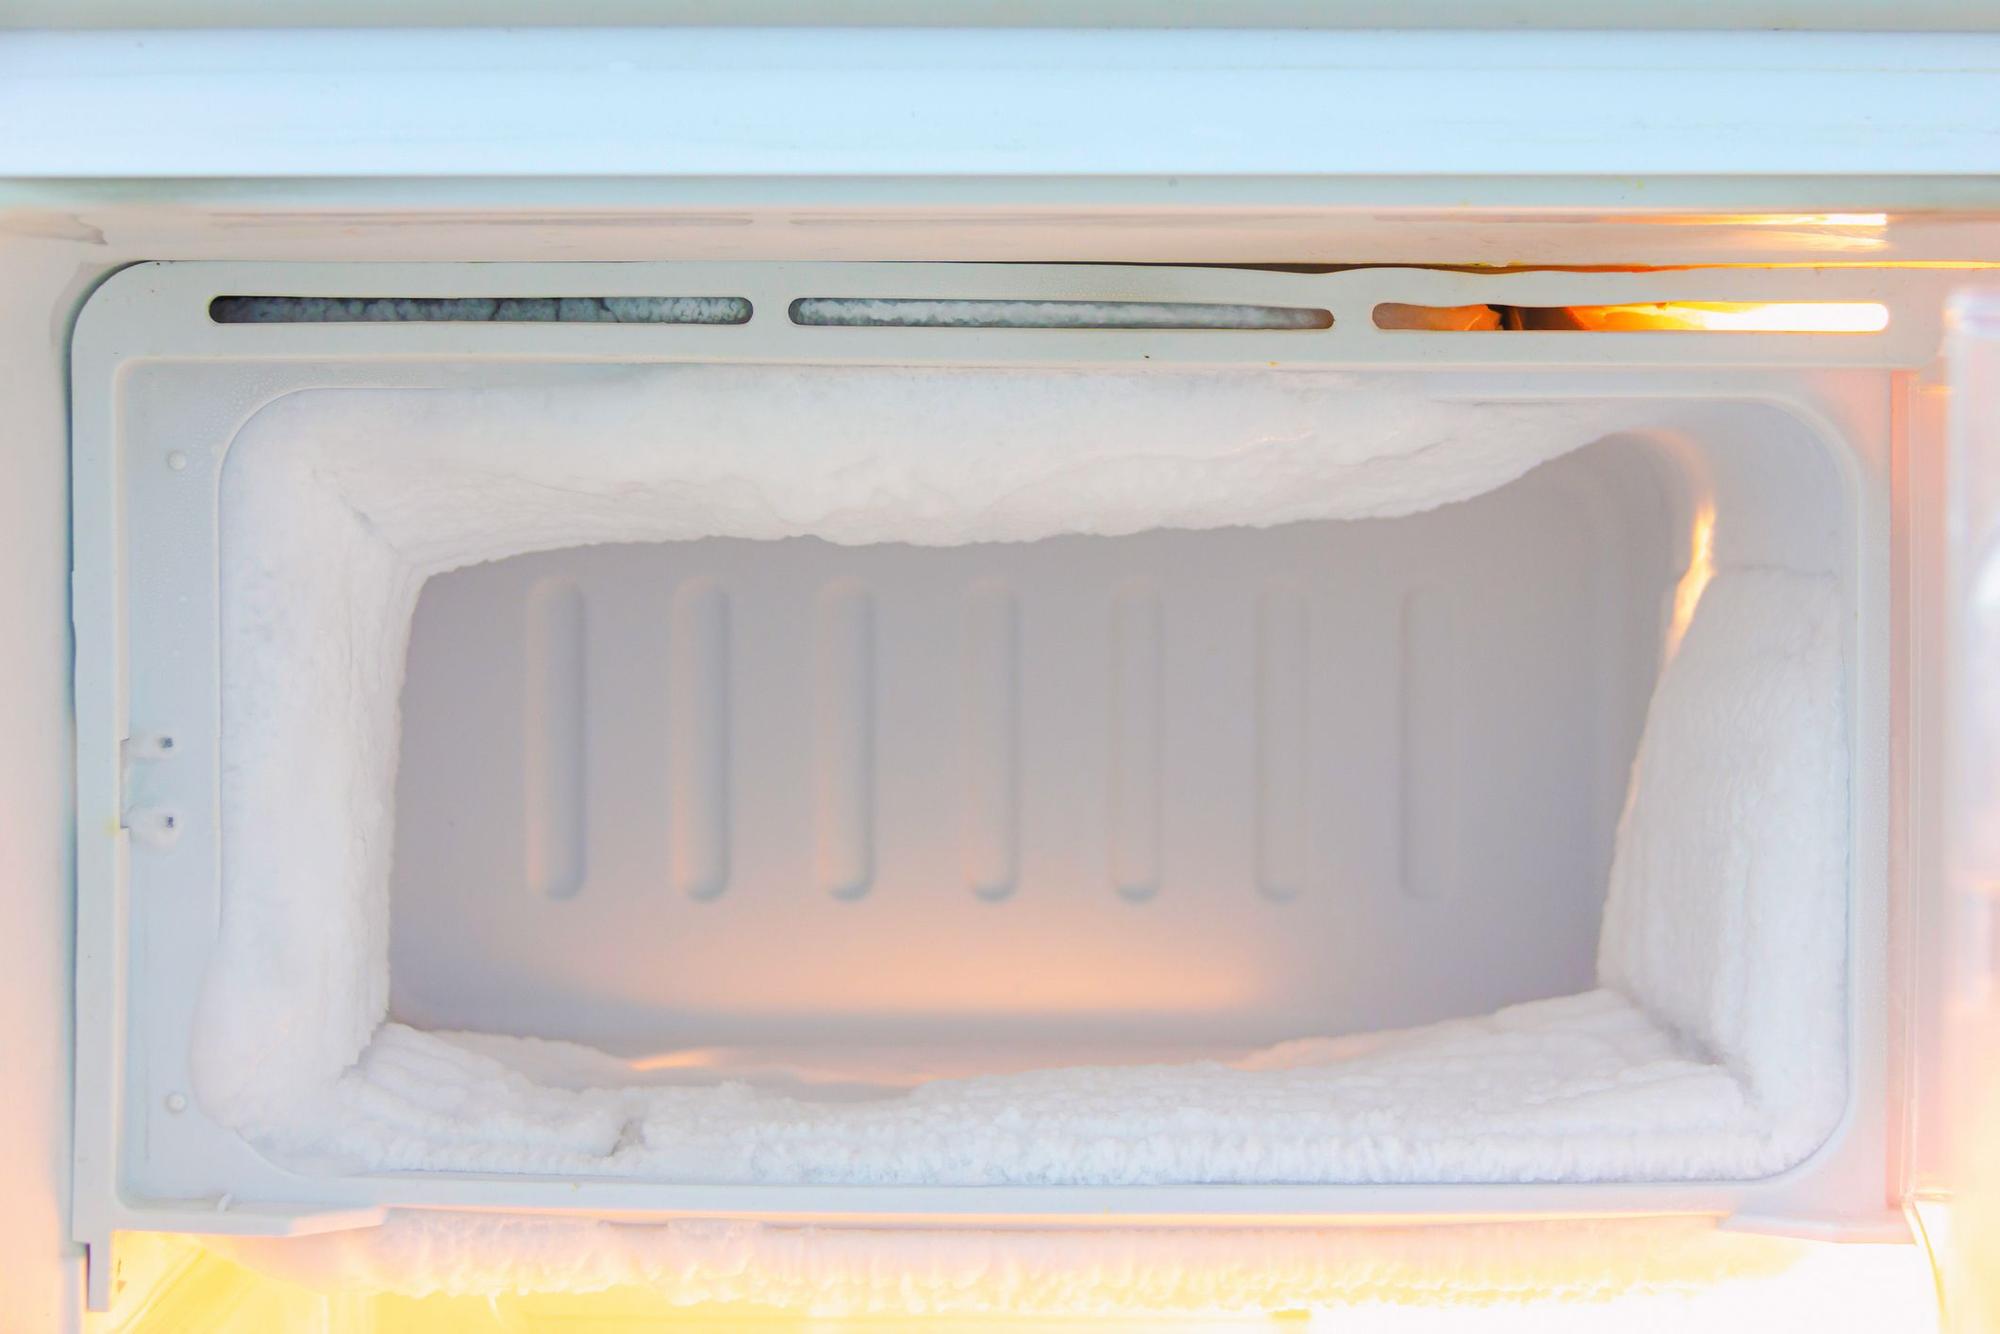 DESCONGELAR CONGELADOR 5 MINUTOS | El truco más efectivo para descongelar  en congelador en 5 minutos (y sin cargártelo)